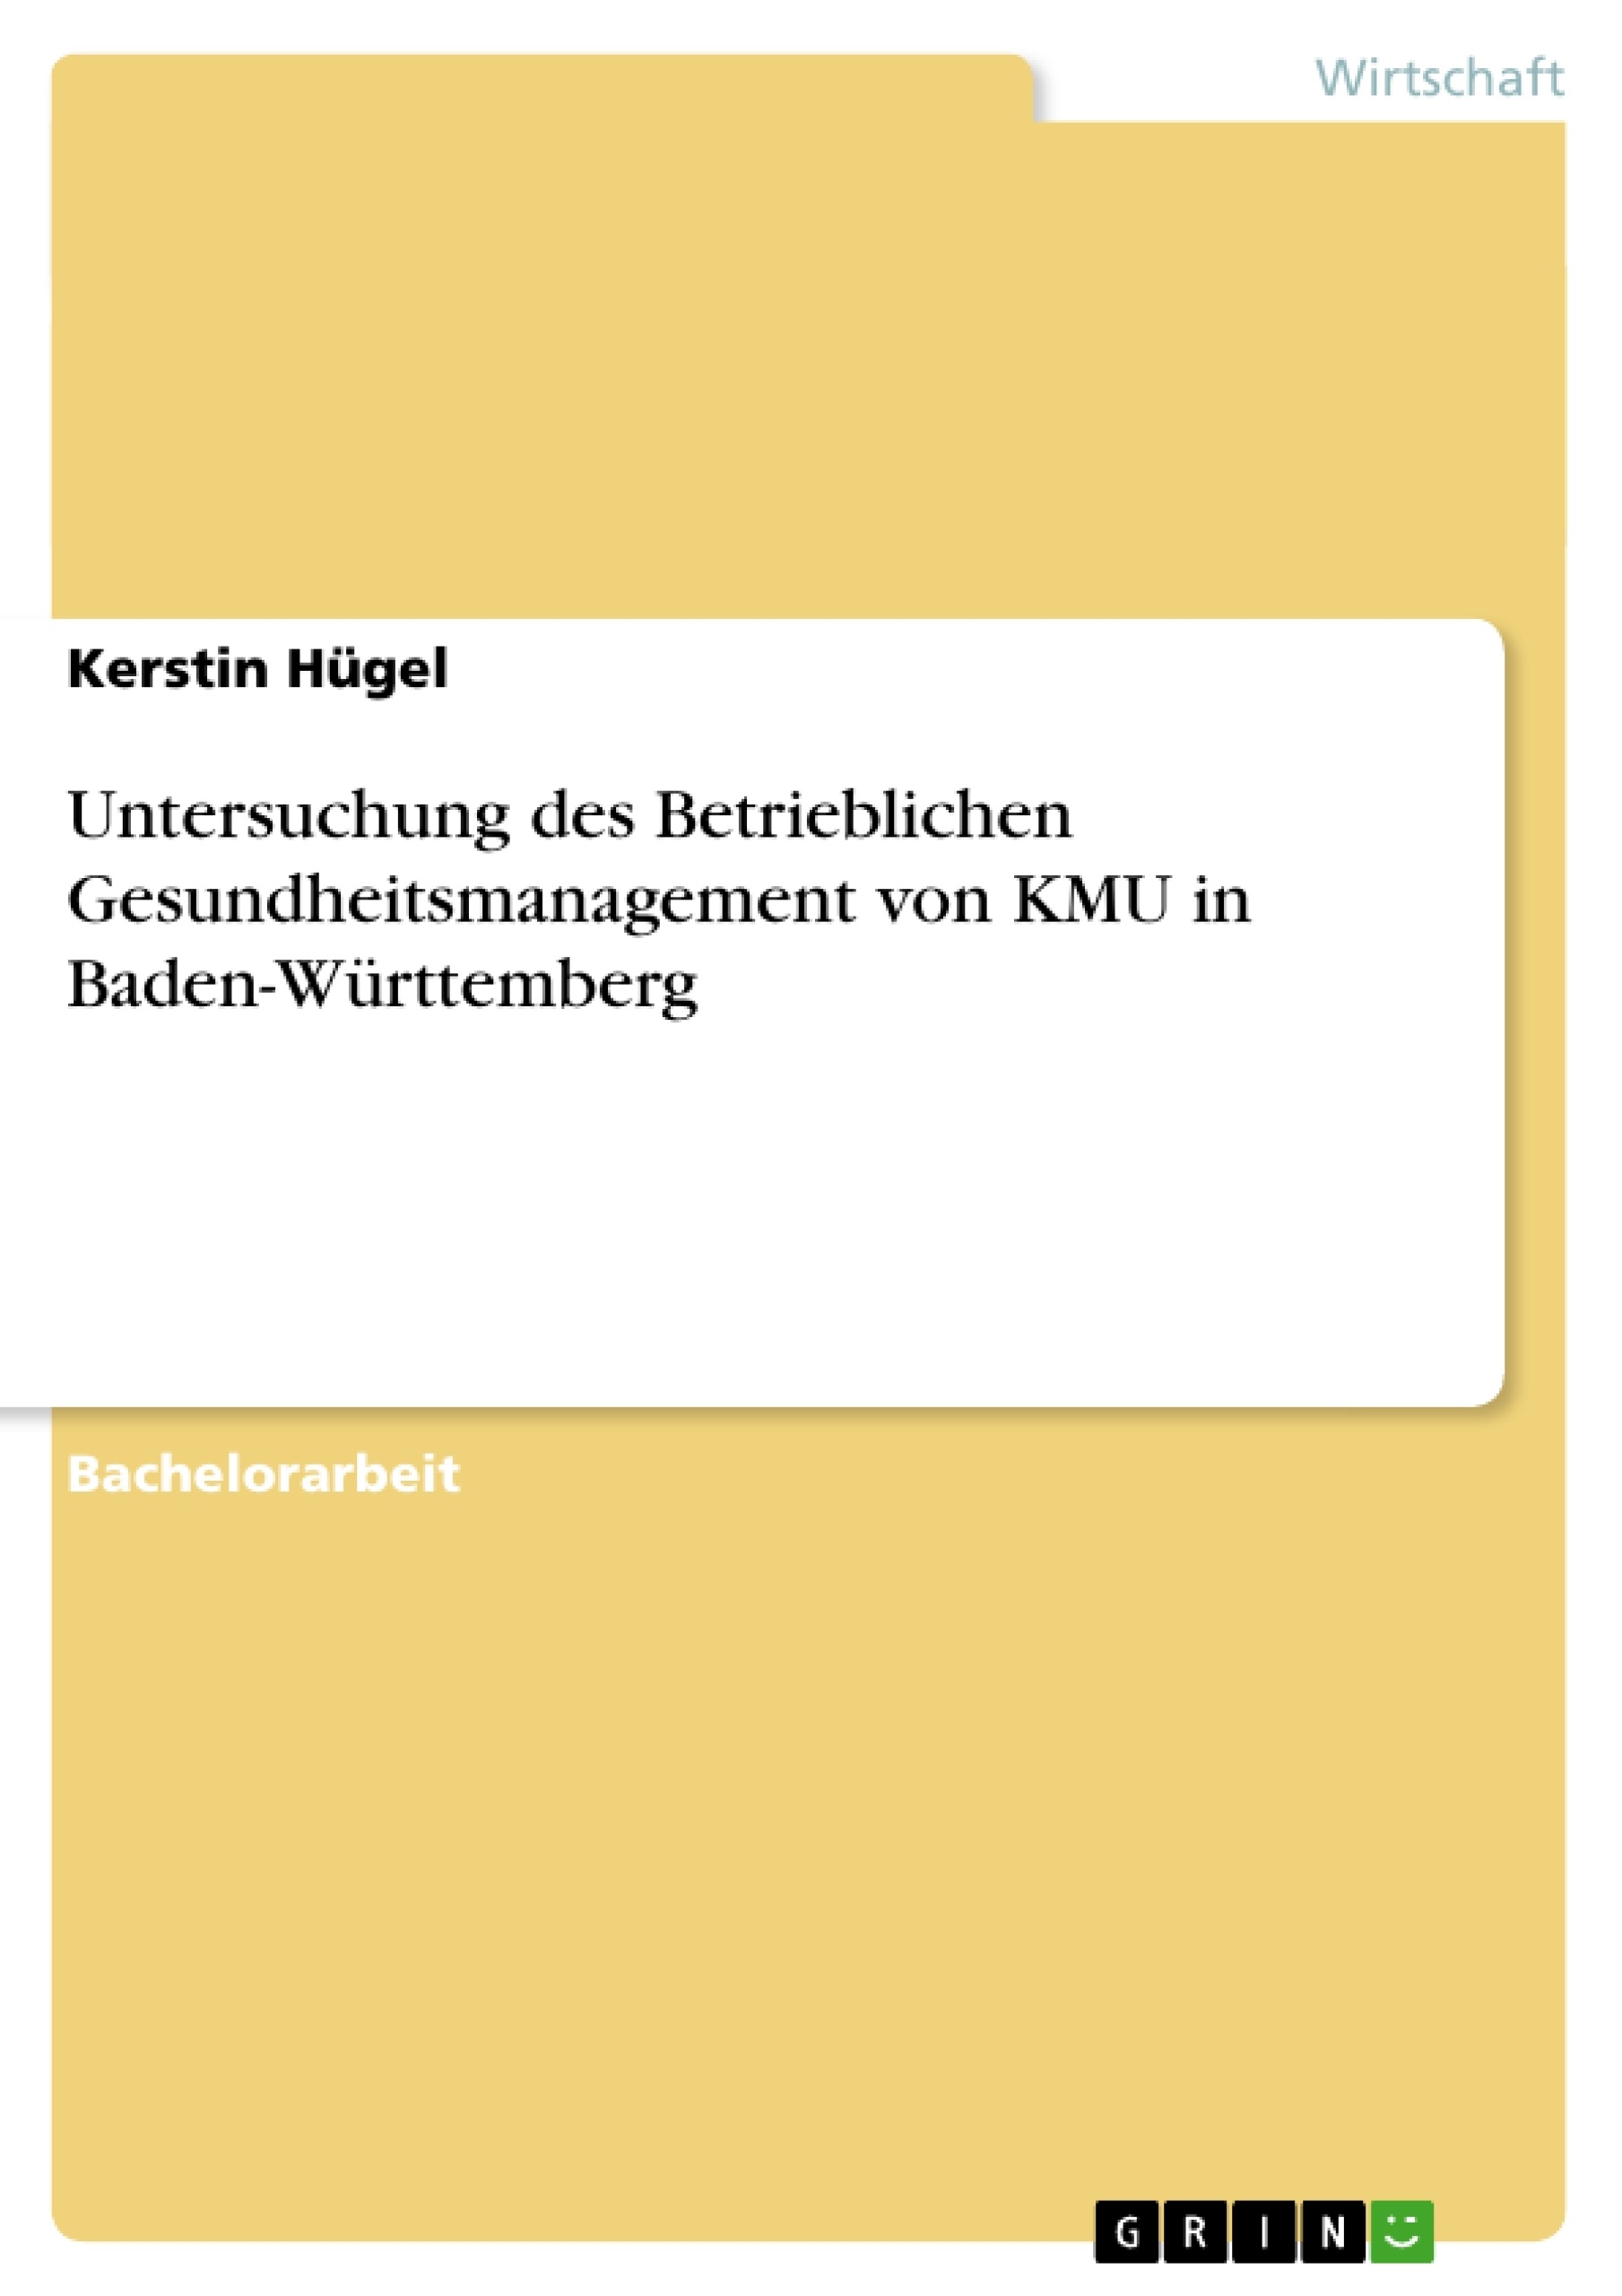 Título: Untersuchung des Betrieblichen Gesundheitsmanagement von KMU in Baden-Württemberg